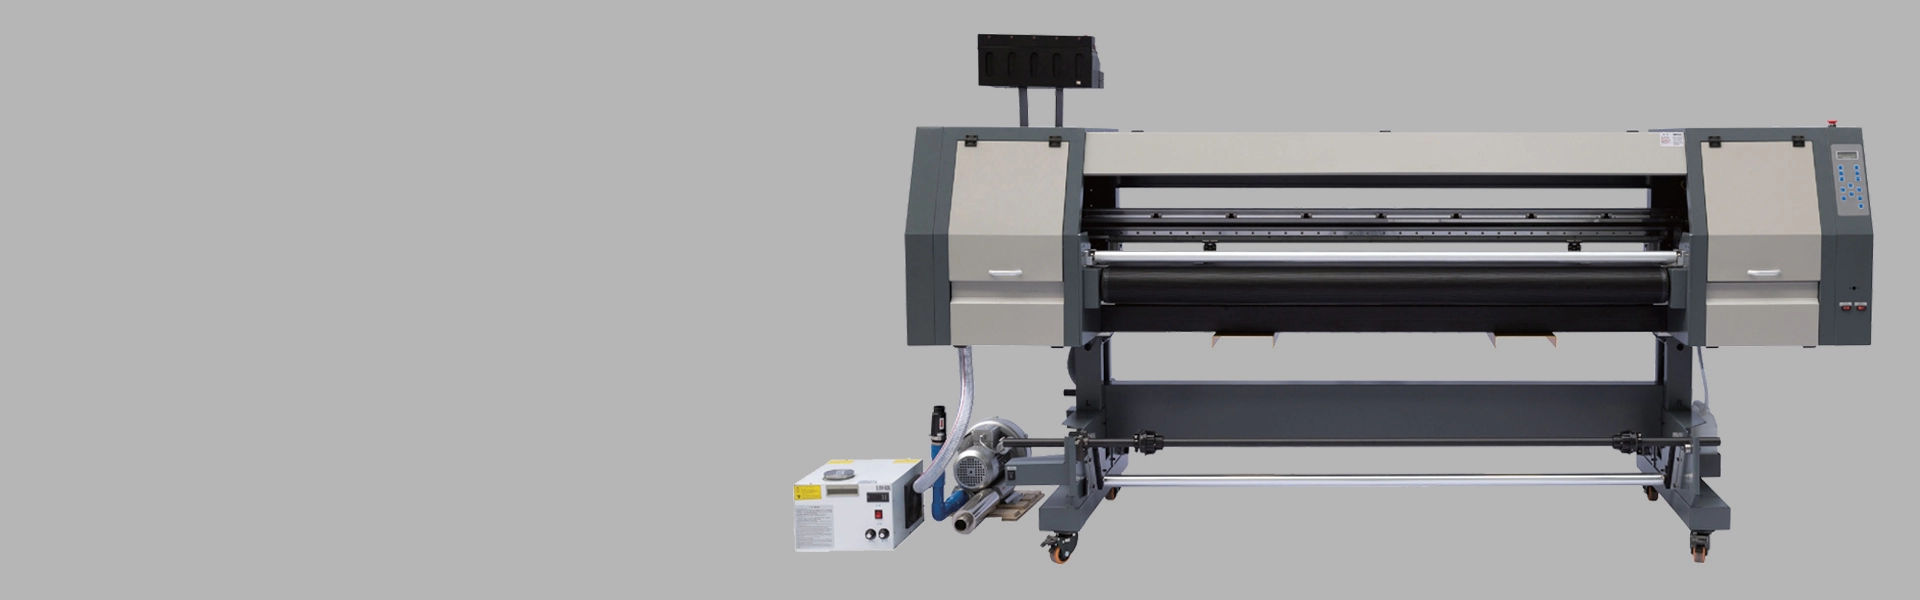 1,8 m UV-hybride printer